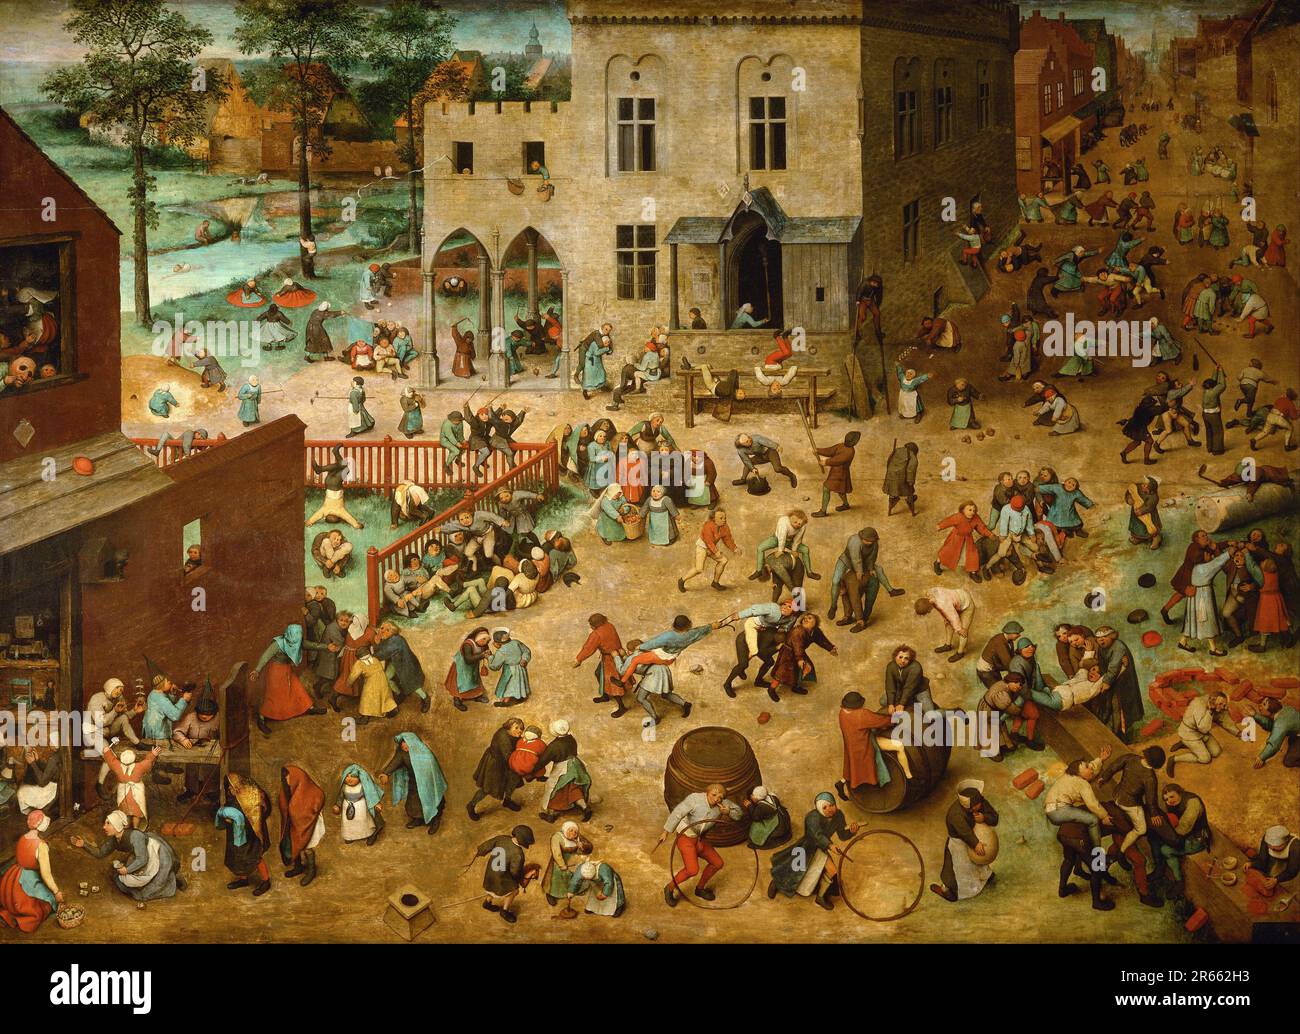 Kinderspiele, gemalt vom niederländischen Renaissance-Maler Pieter Breughel der Ältere im Jahr 1560. Breughel war der wichtigste Maler der niederländischen und flämischen Renaissance. Seine Themenauswahl war einflussreich, er lehnte Porträts und religiöse Szenen zugunsten von lokalen und Bauernszenen ab. Stockfoto